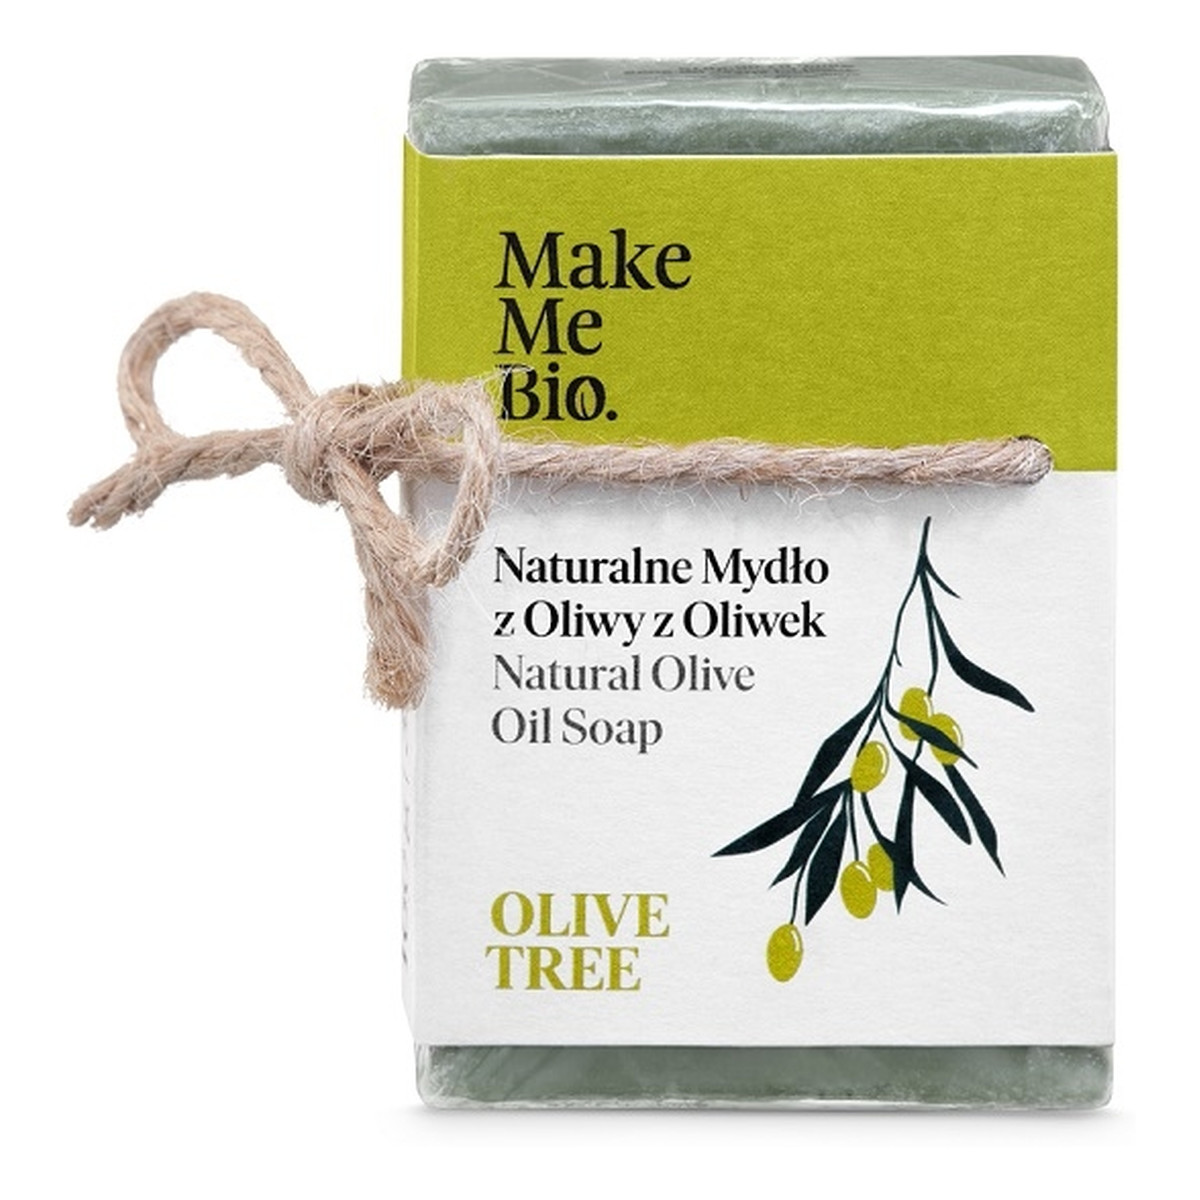 Make Me Bio Olive Oil Soap 100% Naturalne Mydło Z Oliwy Z Oliwek 100g